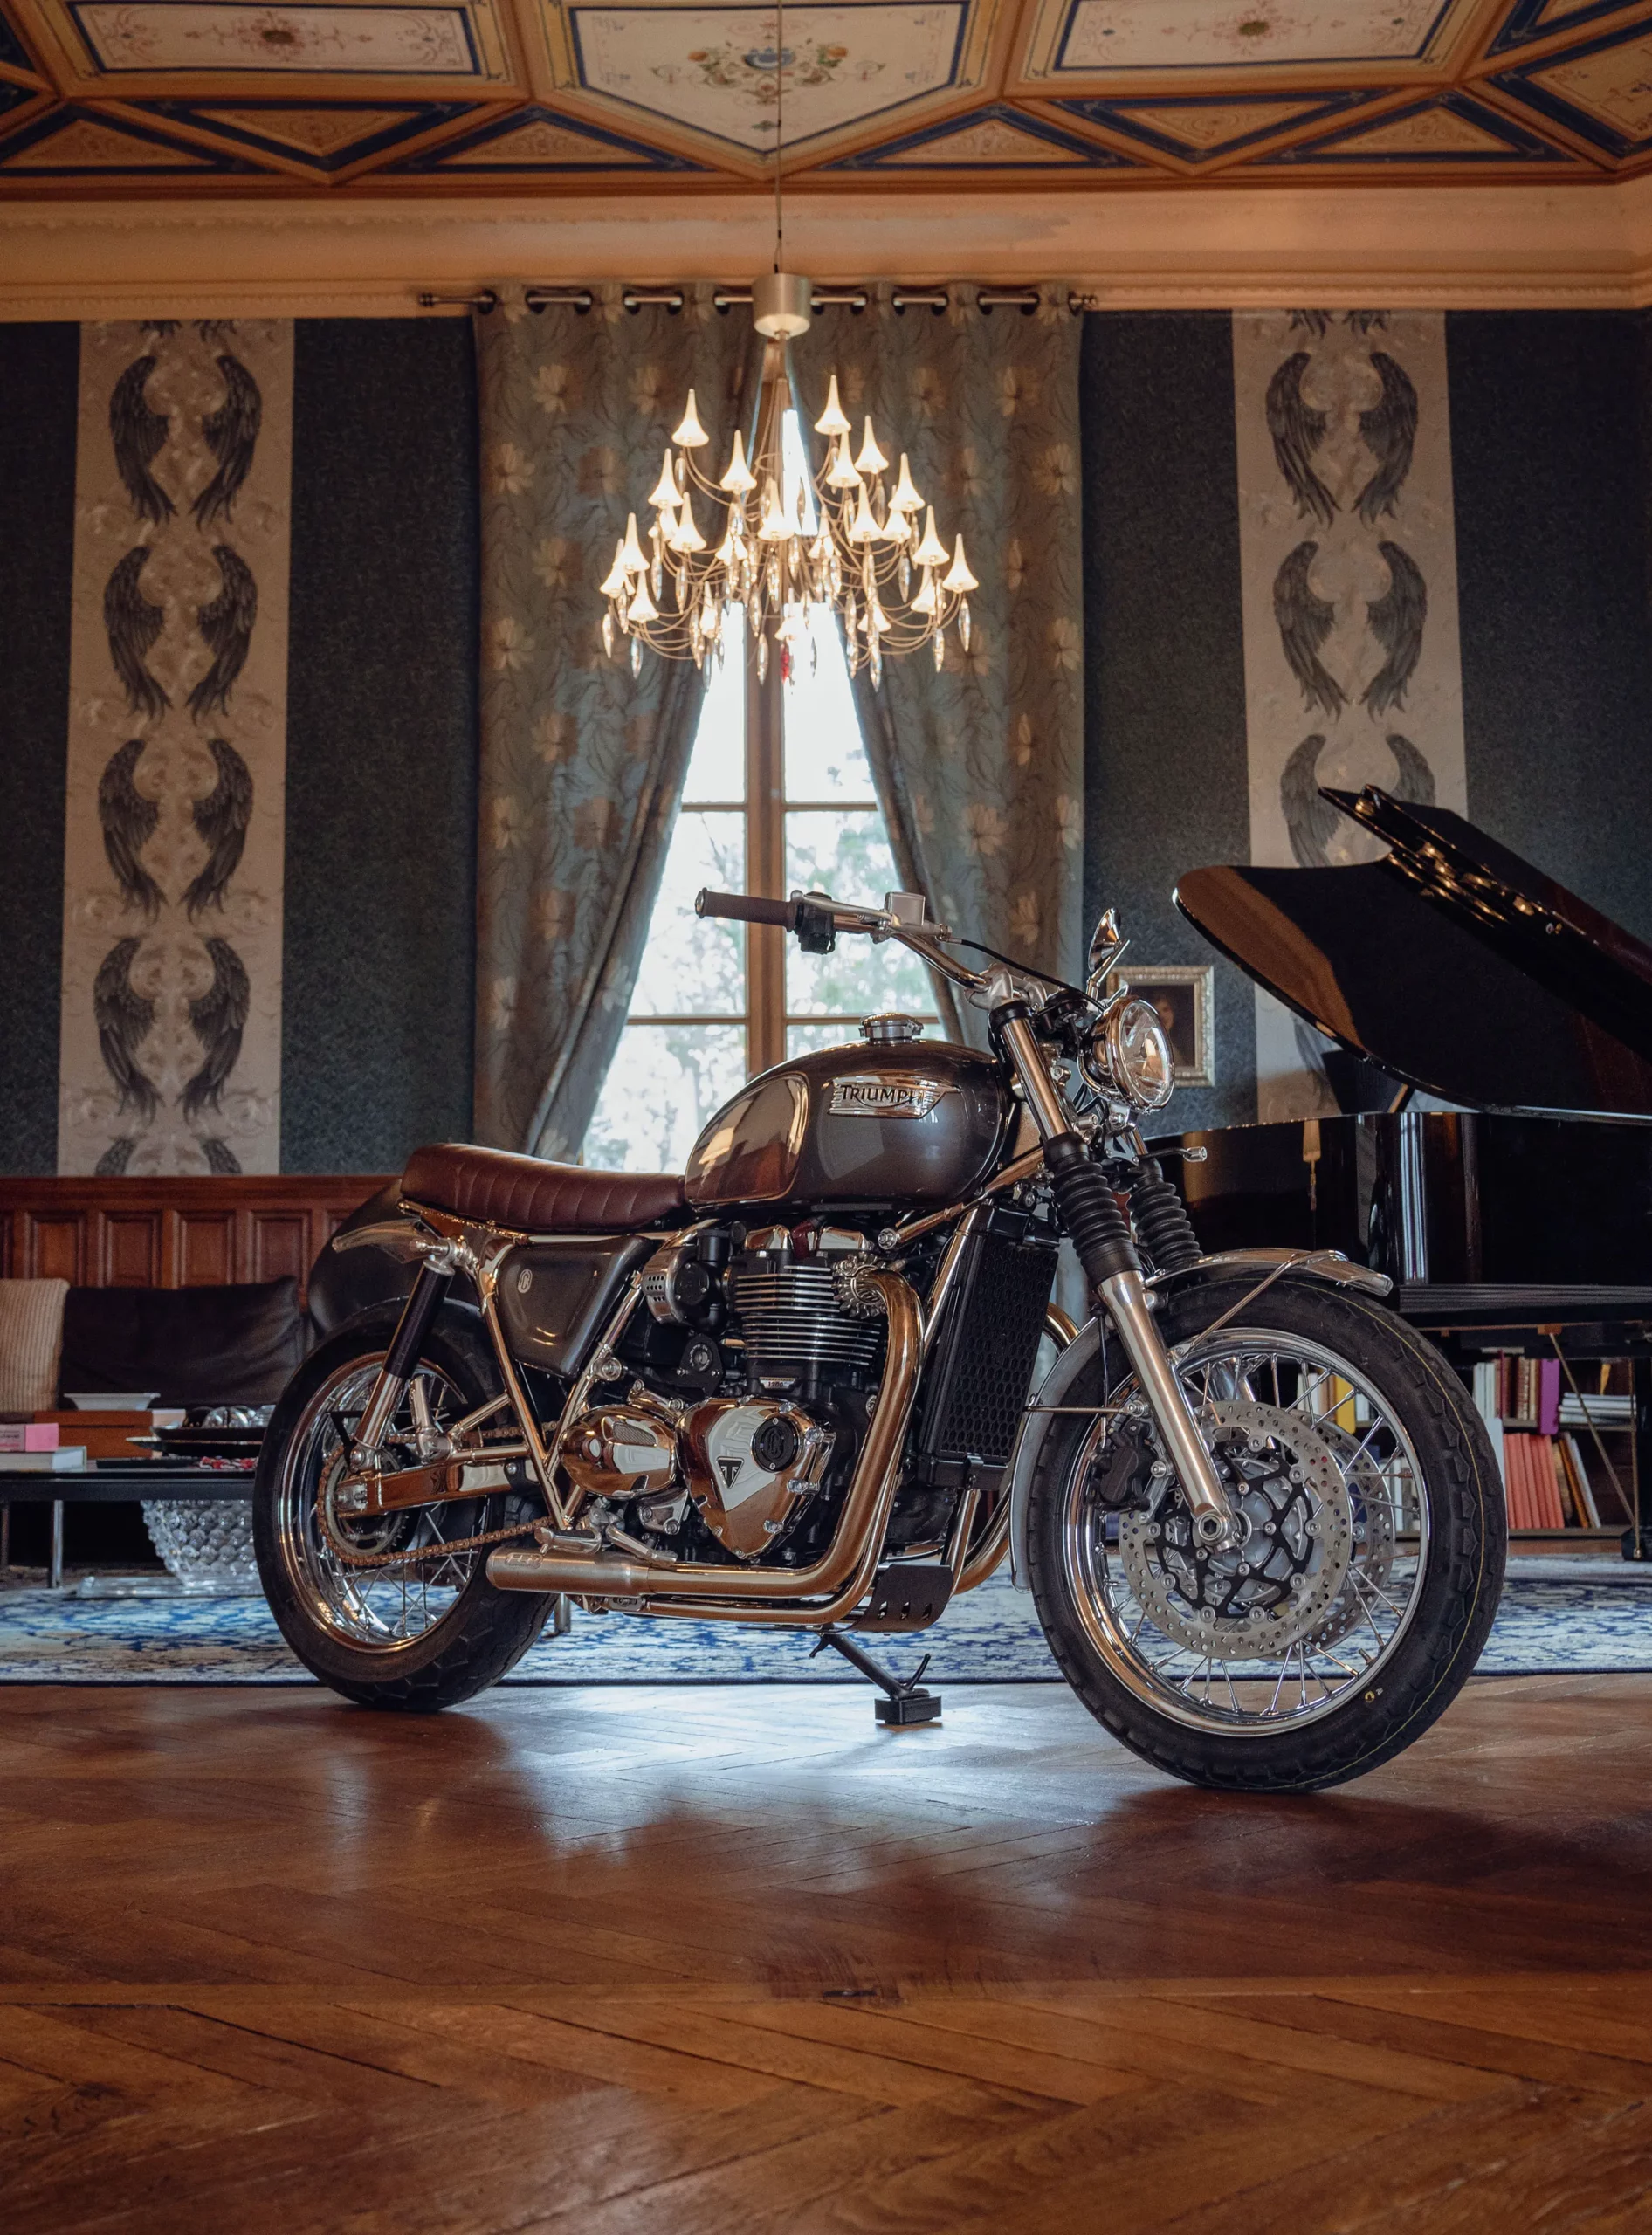 c'est une moto preparee par le preparateur fcr original, prise en photo dans un chateau